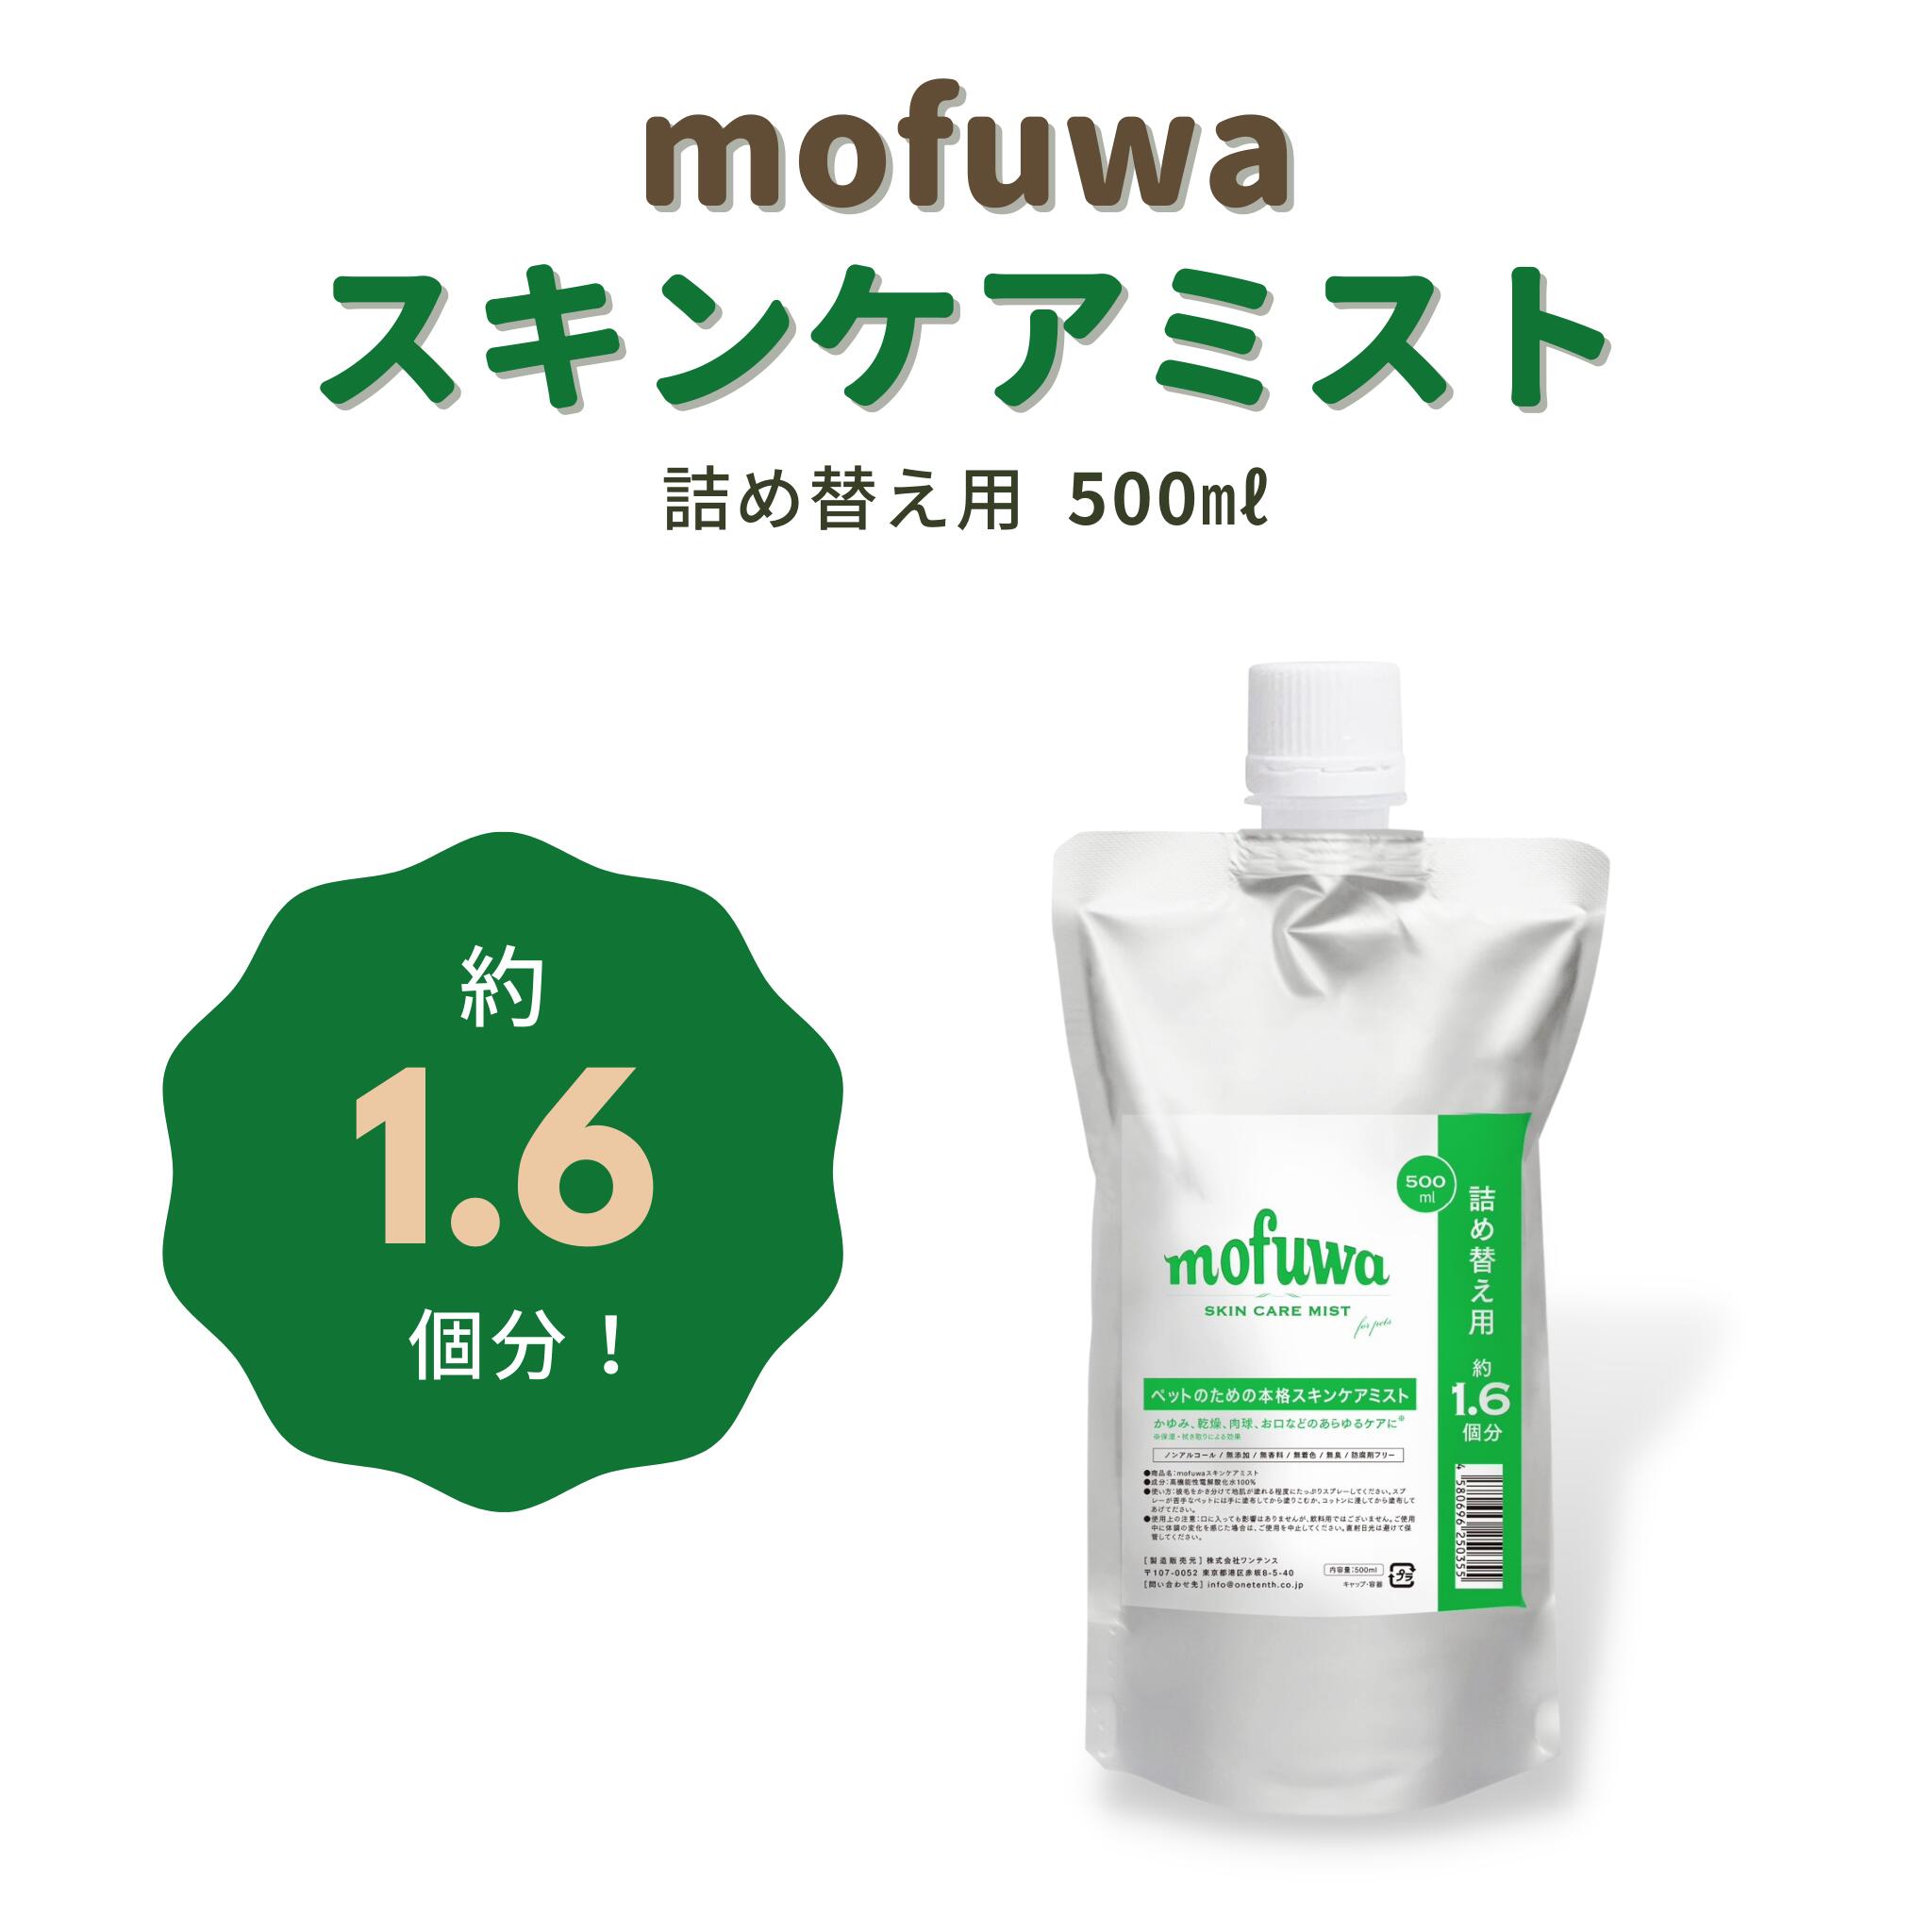 【楽天市場】mofuwa スキンケア スプレー 500ml 詰め替え カイカイ